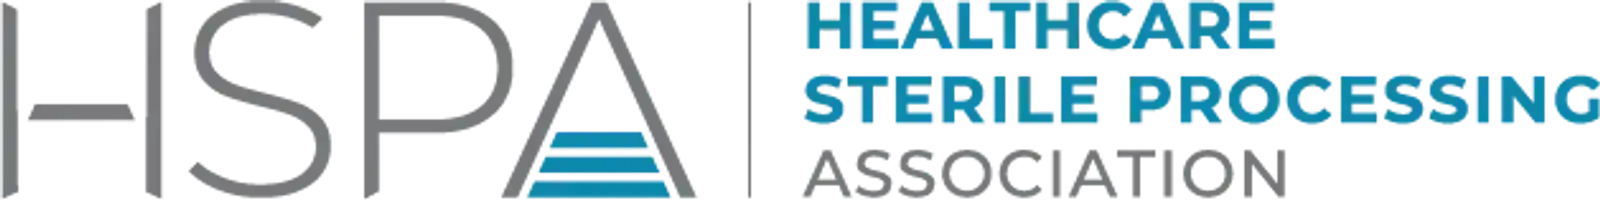 HSPA Logo Horizontal RGB